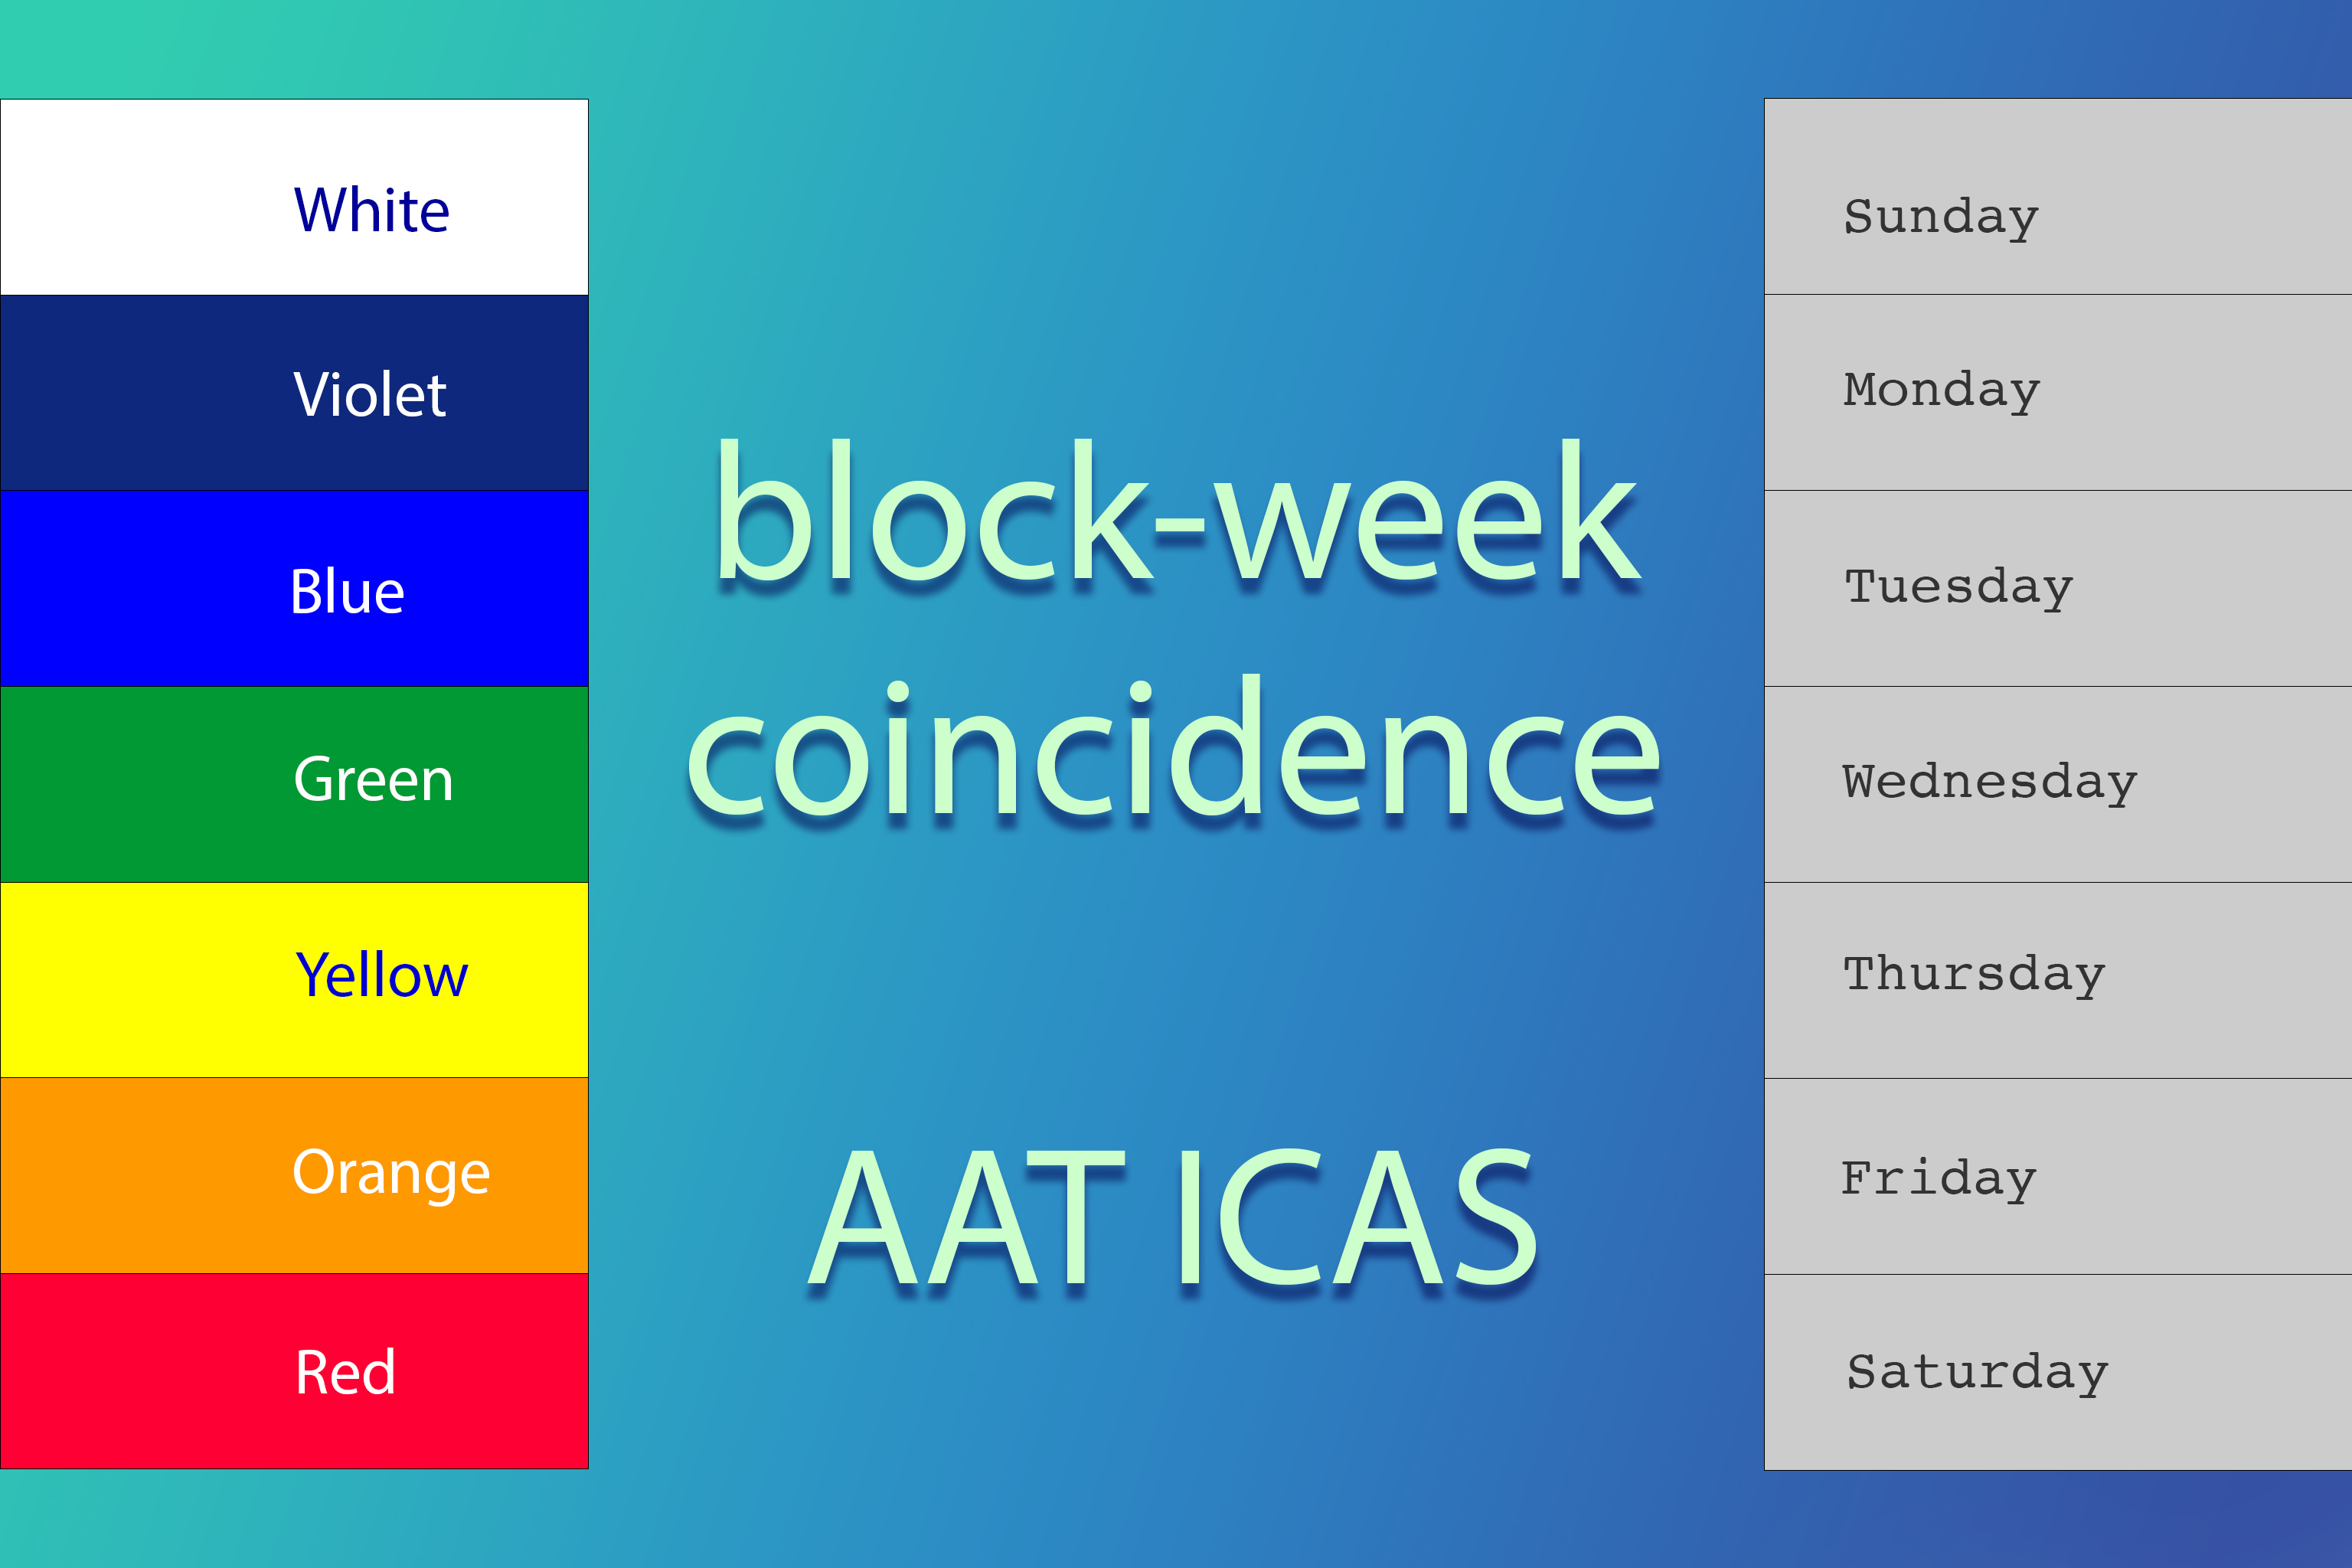 block-week coincidence